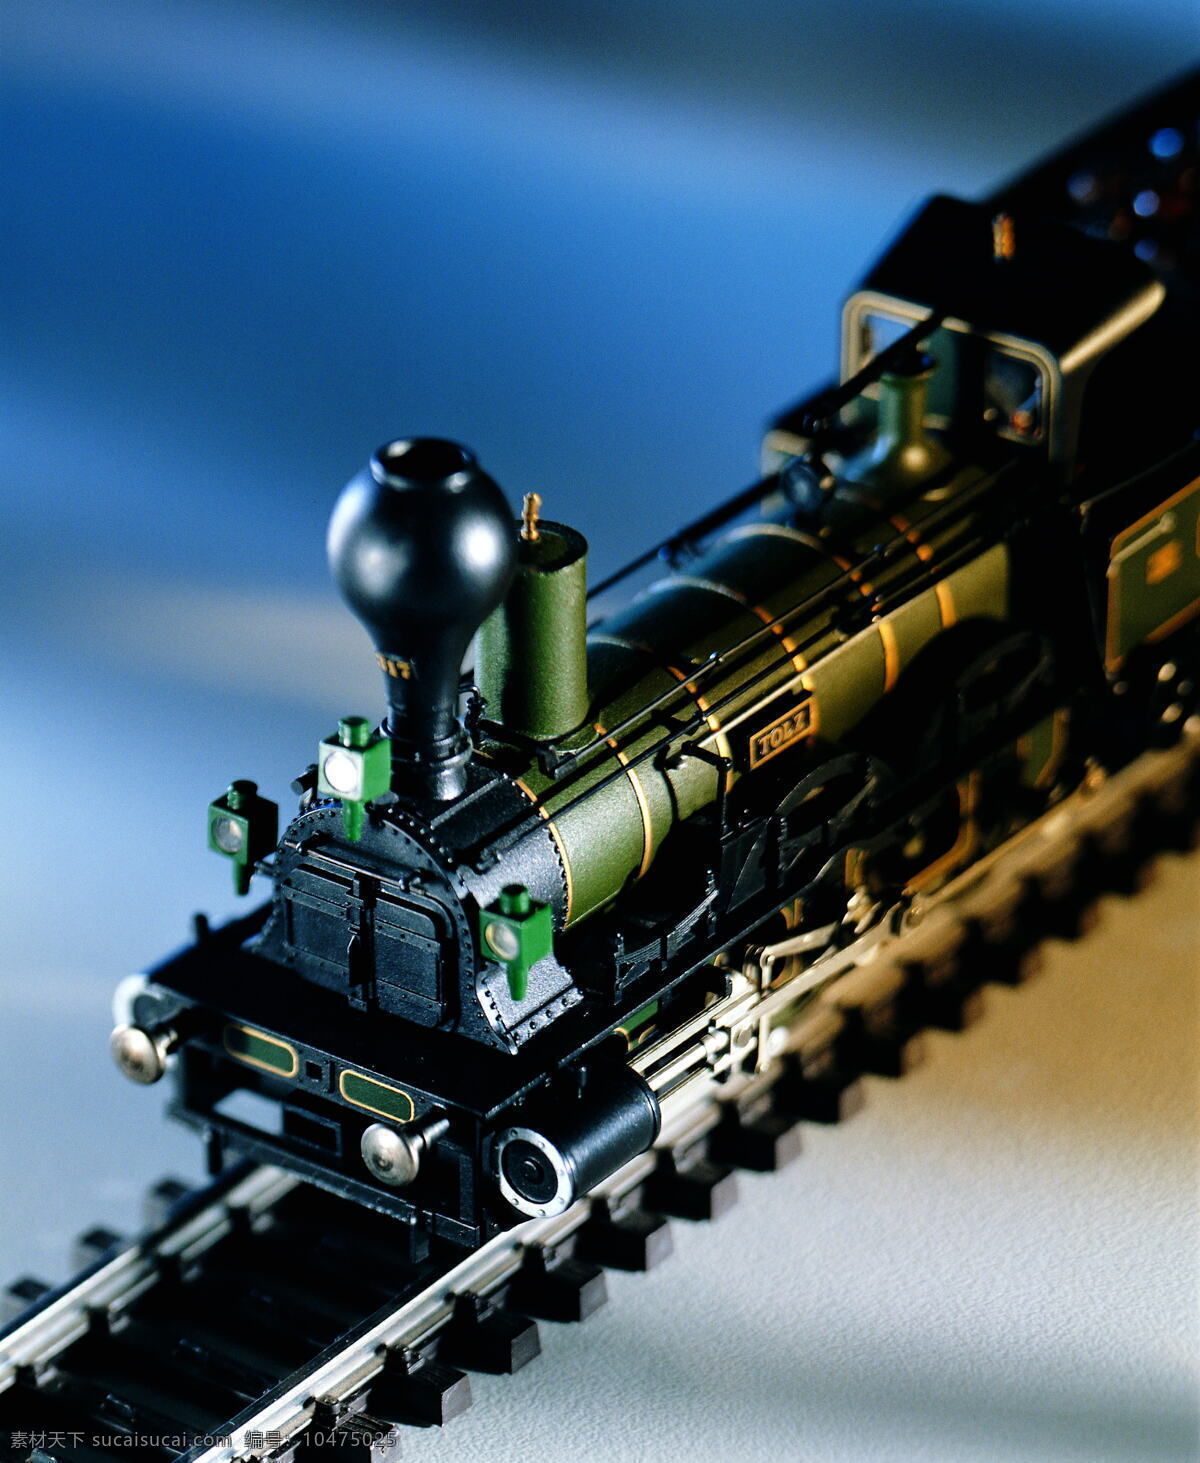 玩具 火车 玩具火车 生活用品 生活百科 生活素材 摄影图库 黑色